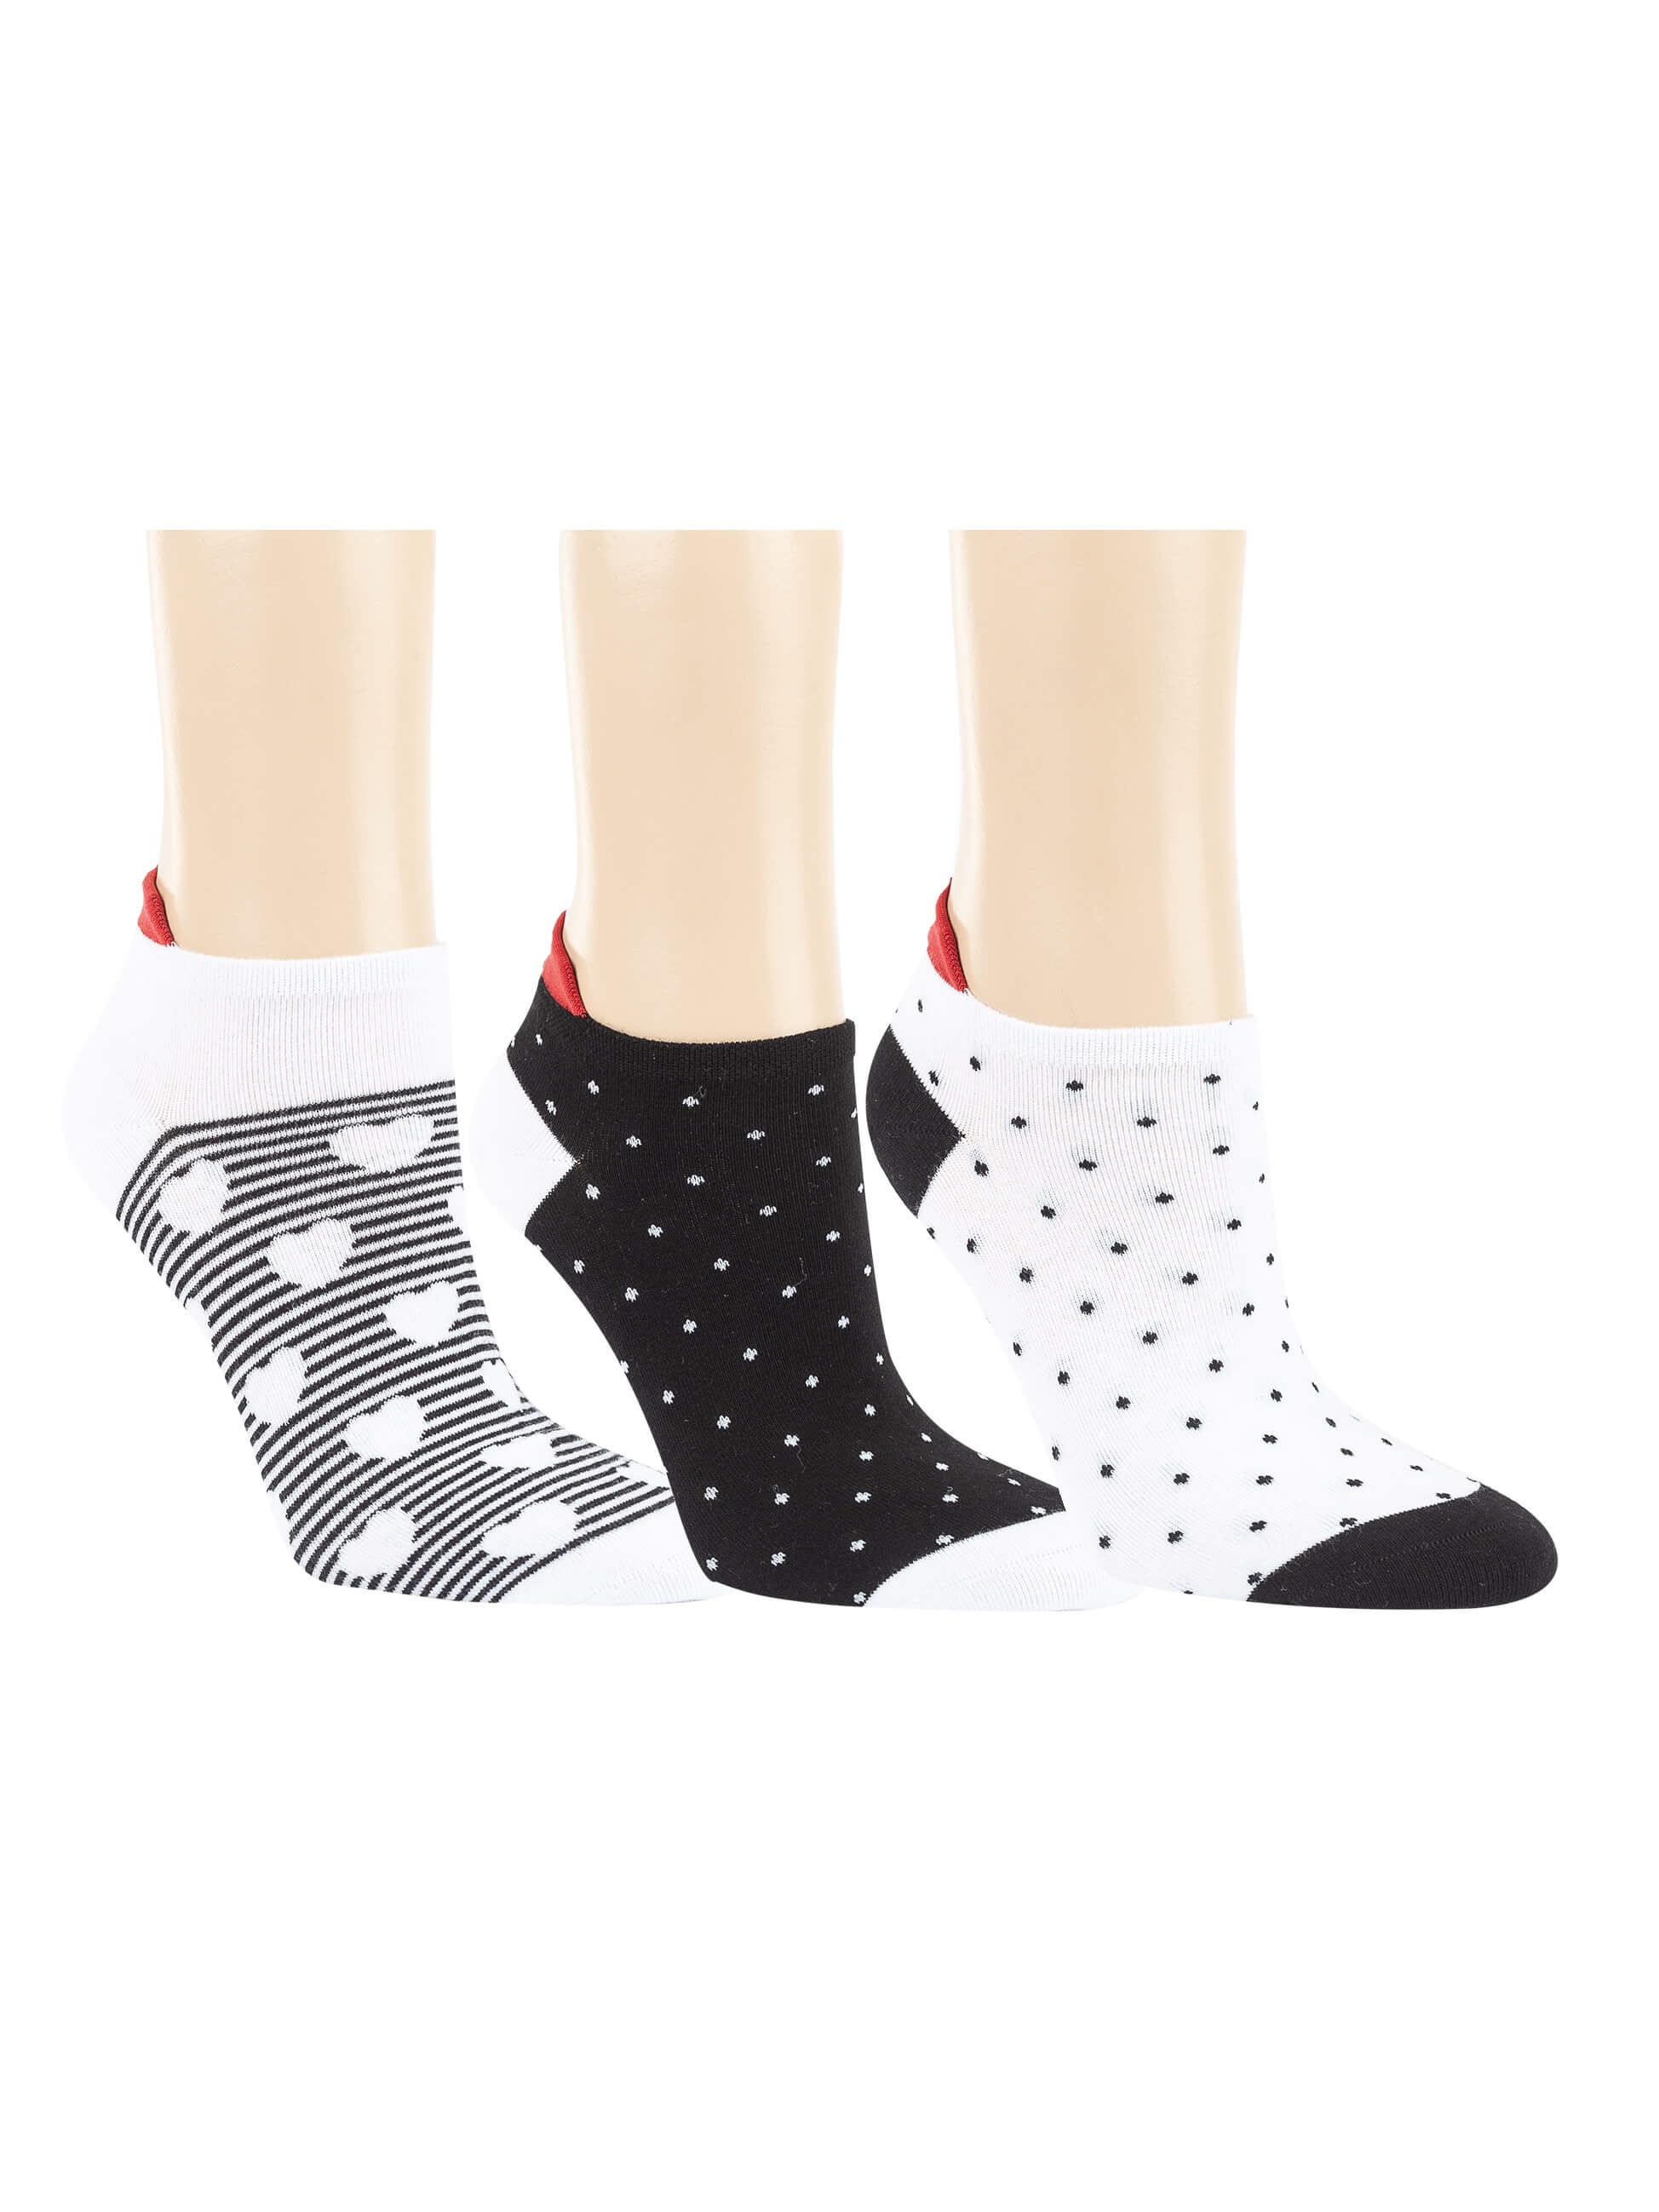 Damen - - Socken Black&White 6,10 - EUR Sneaker